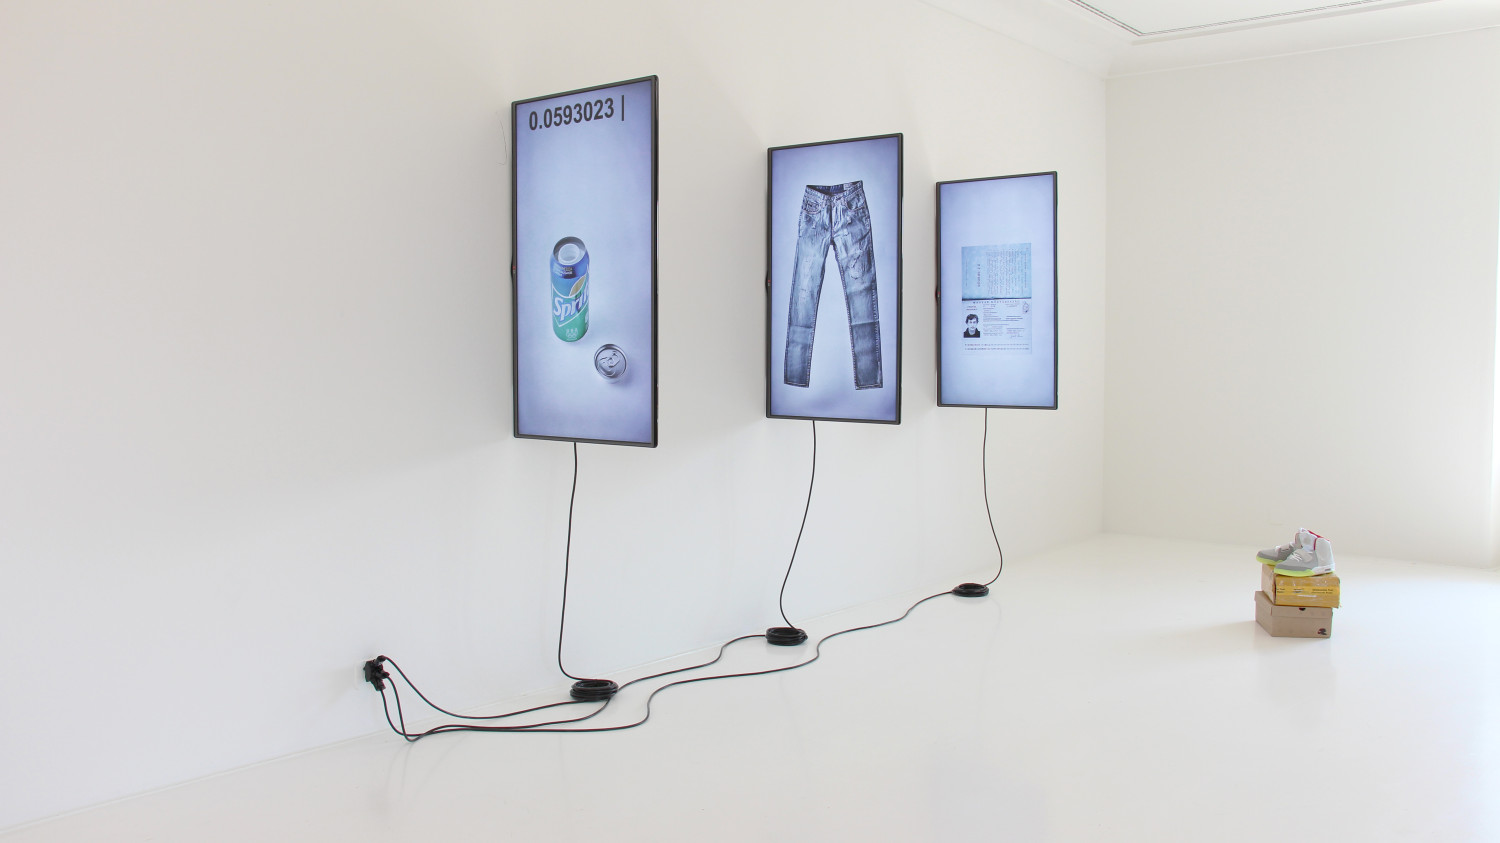 Random Darknet Shopper, three-channel video installation, 2015